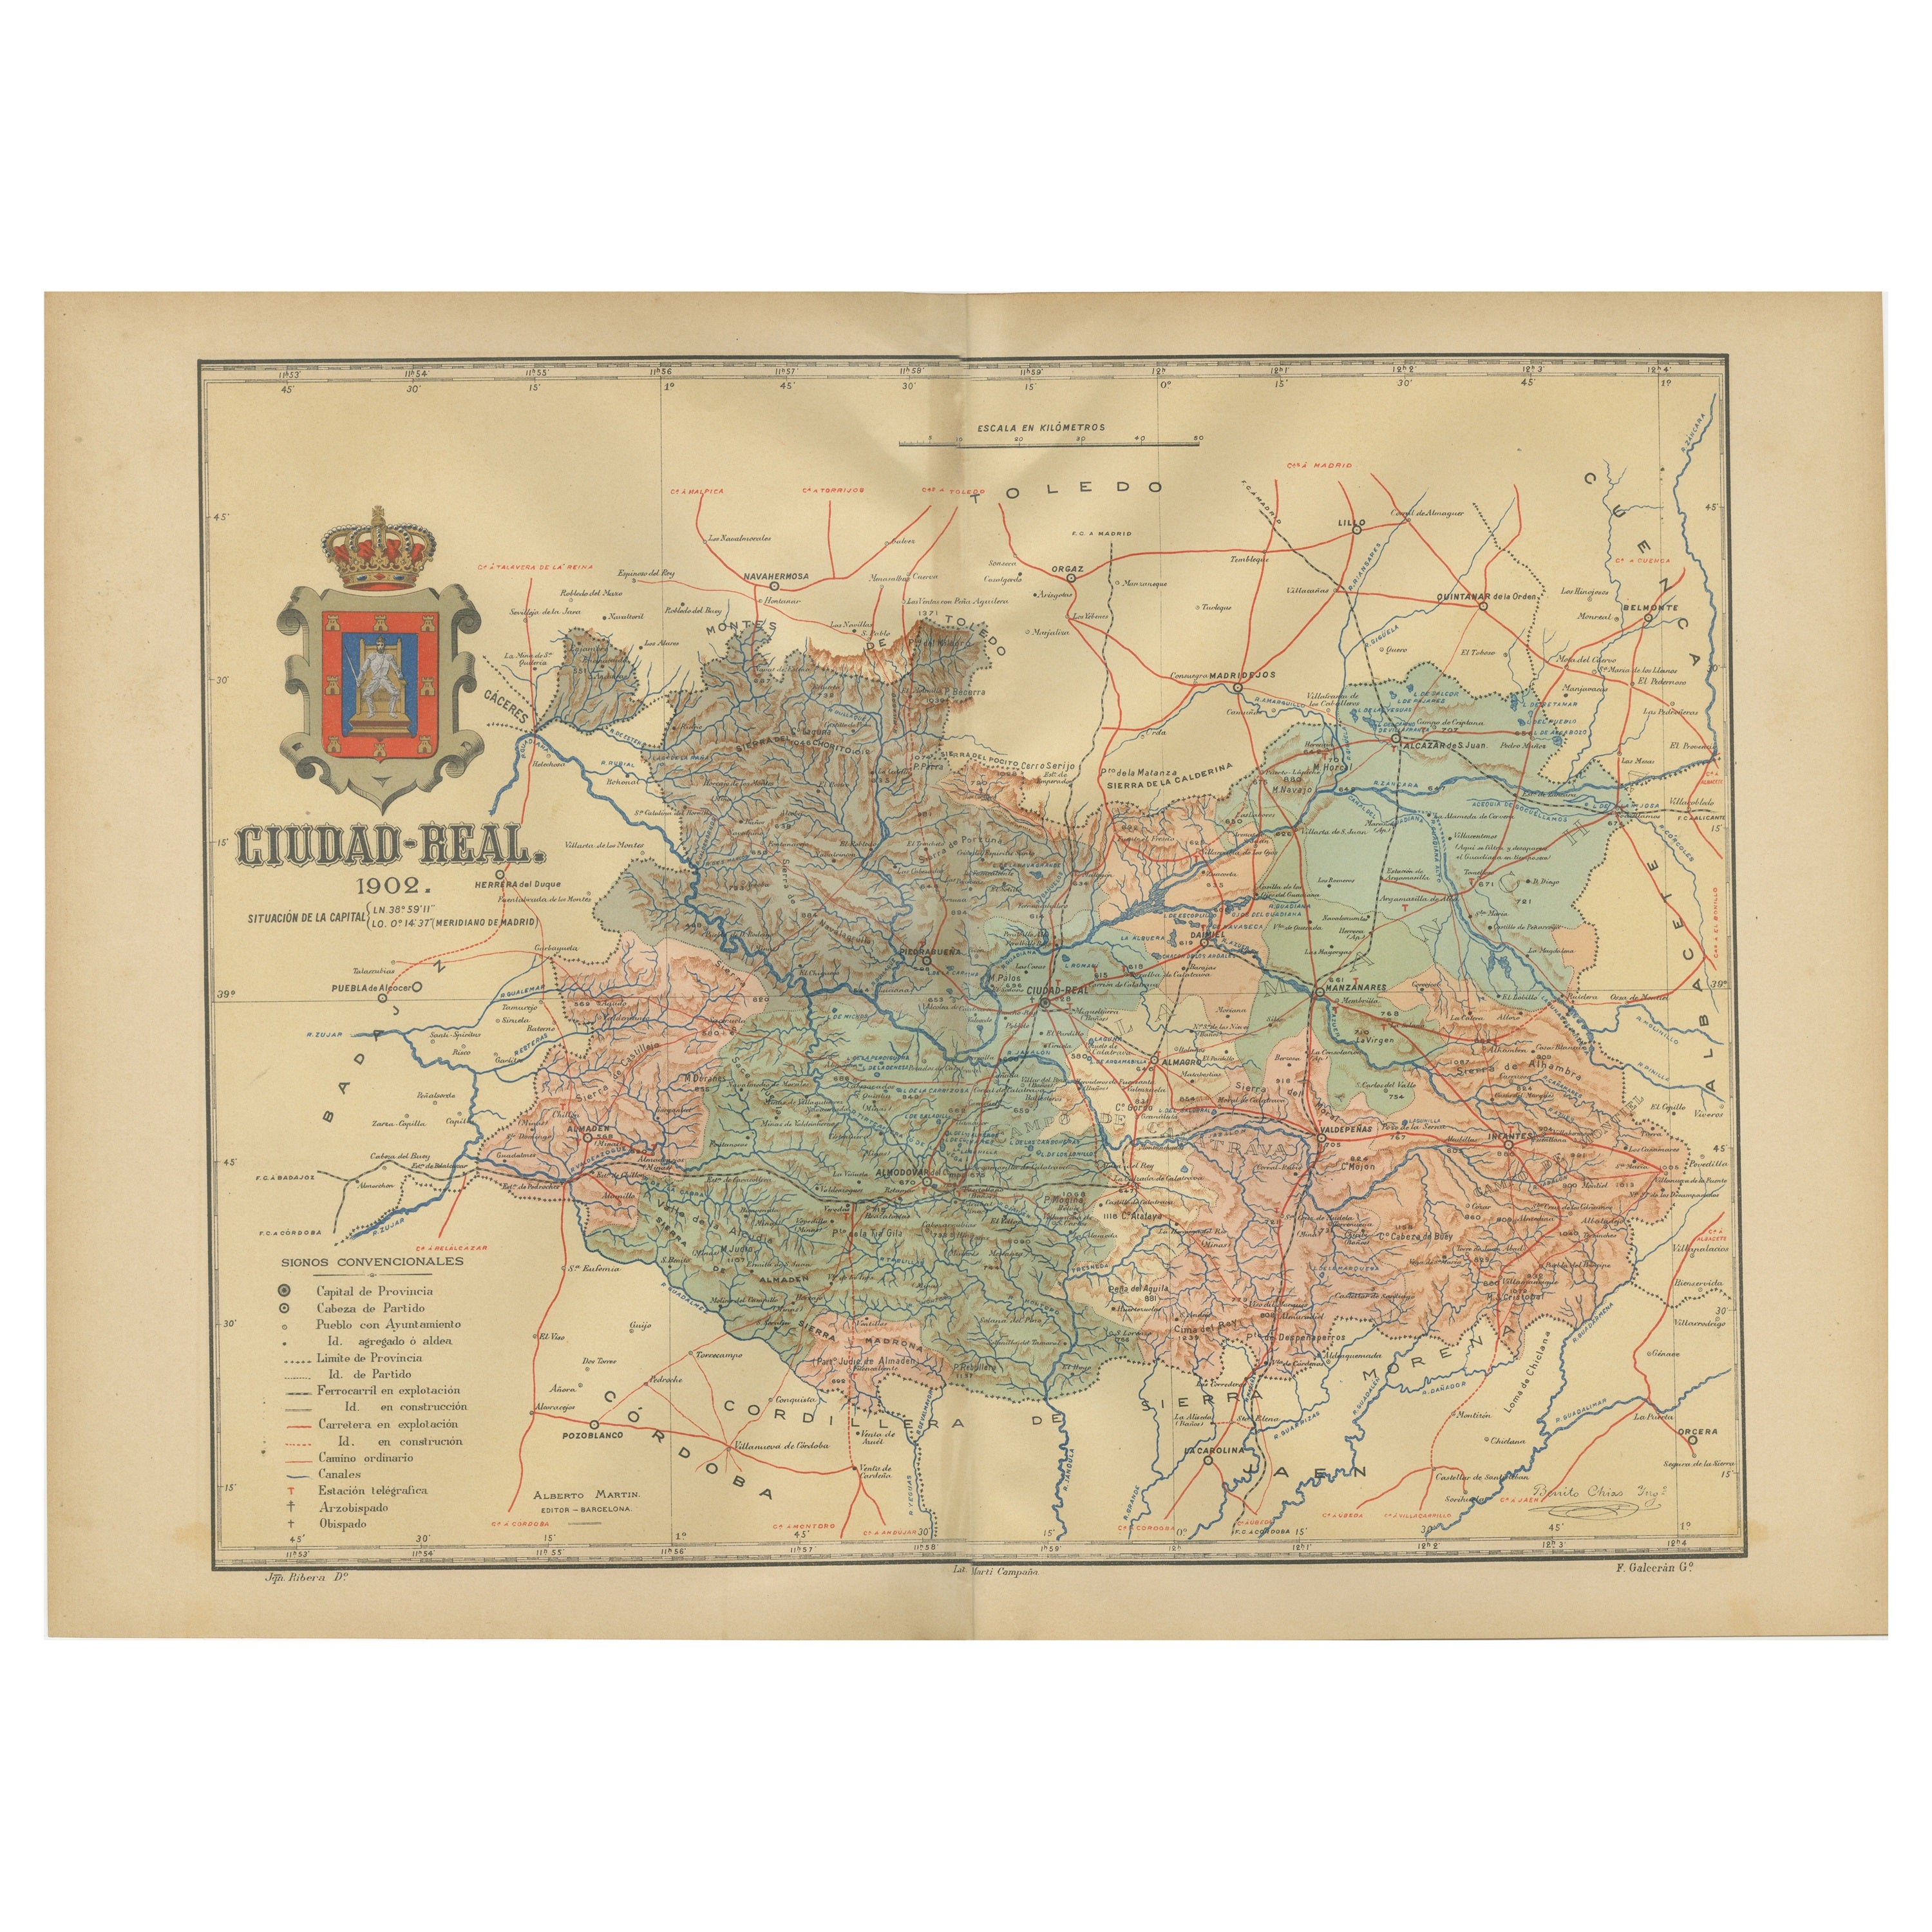 Ciudad Real 1902: A Detailed Cartographic Survey of La Mancha in Spain